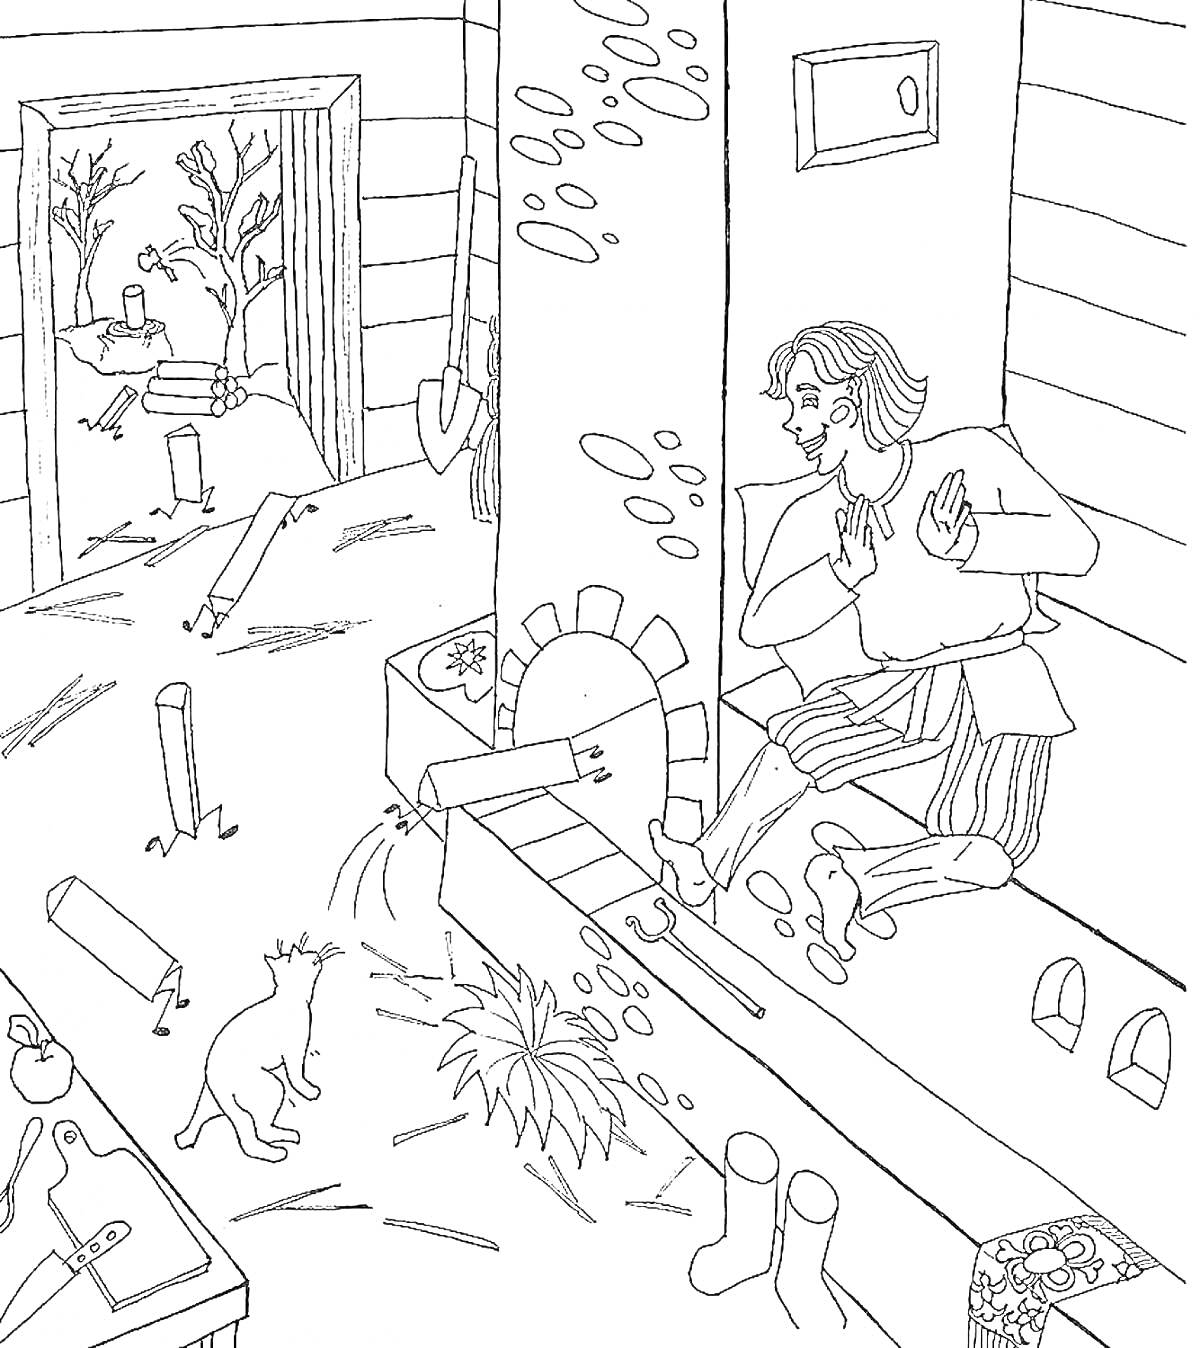 Раскраска Емеля на печи, охотничья сцена с забором и шапками, кот, грязные сапоги, лопата, деревья на заднем плане, открытая дверь